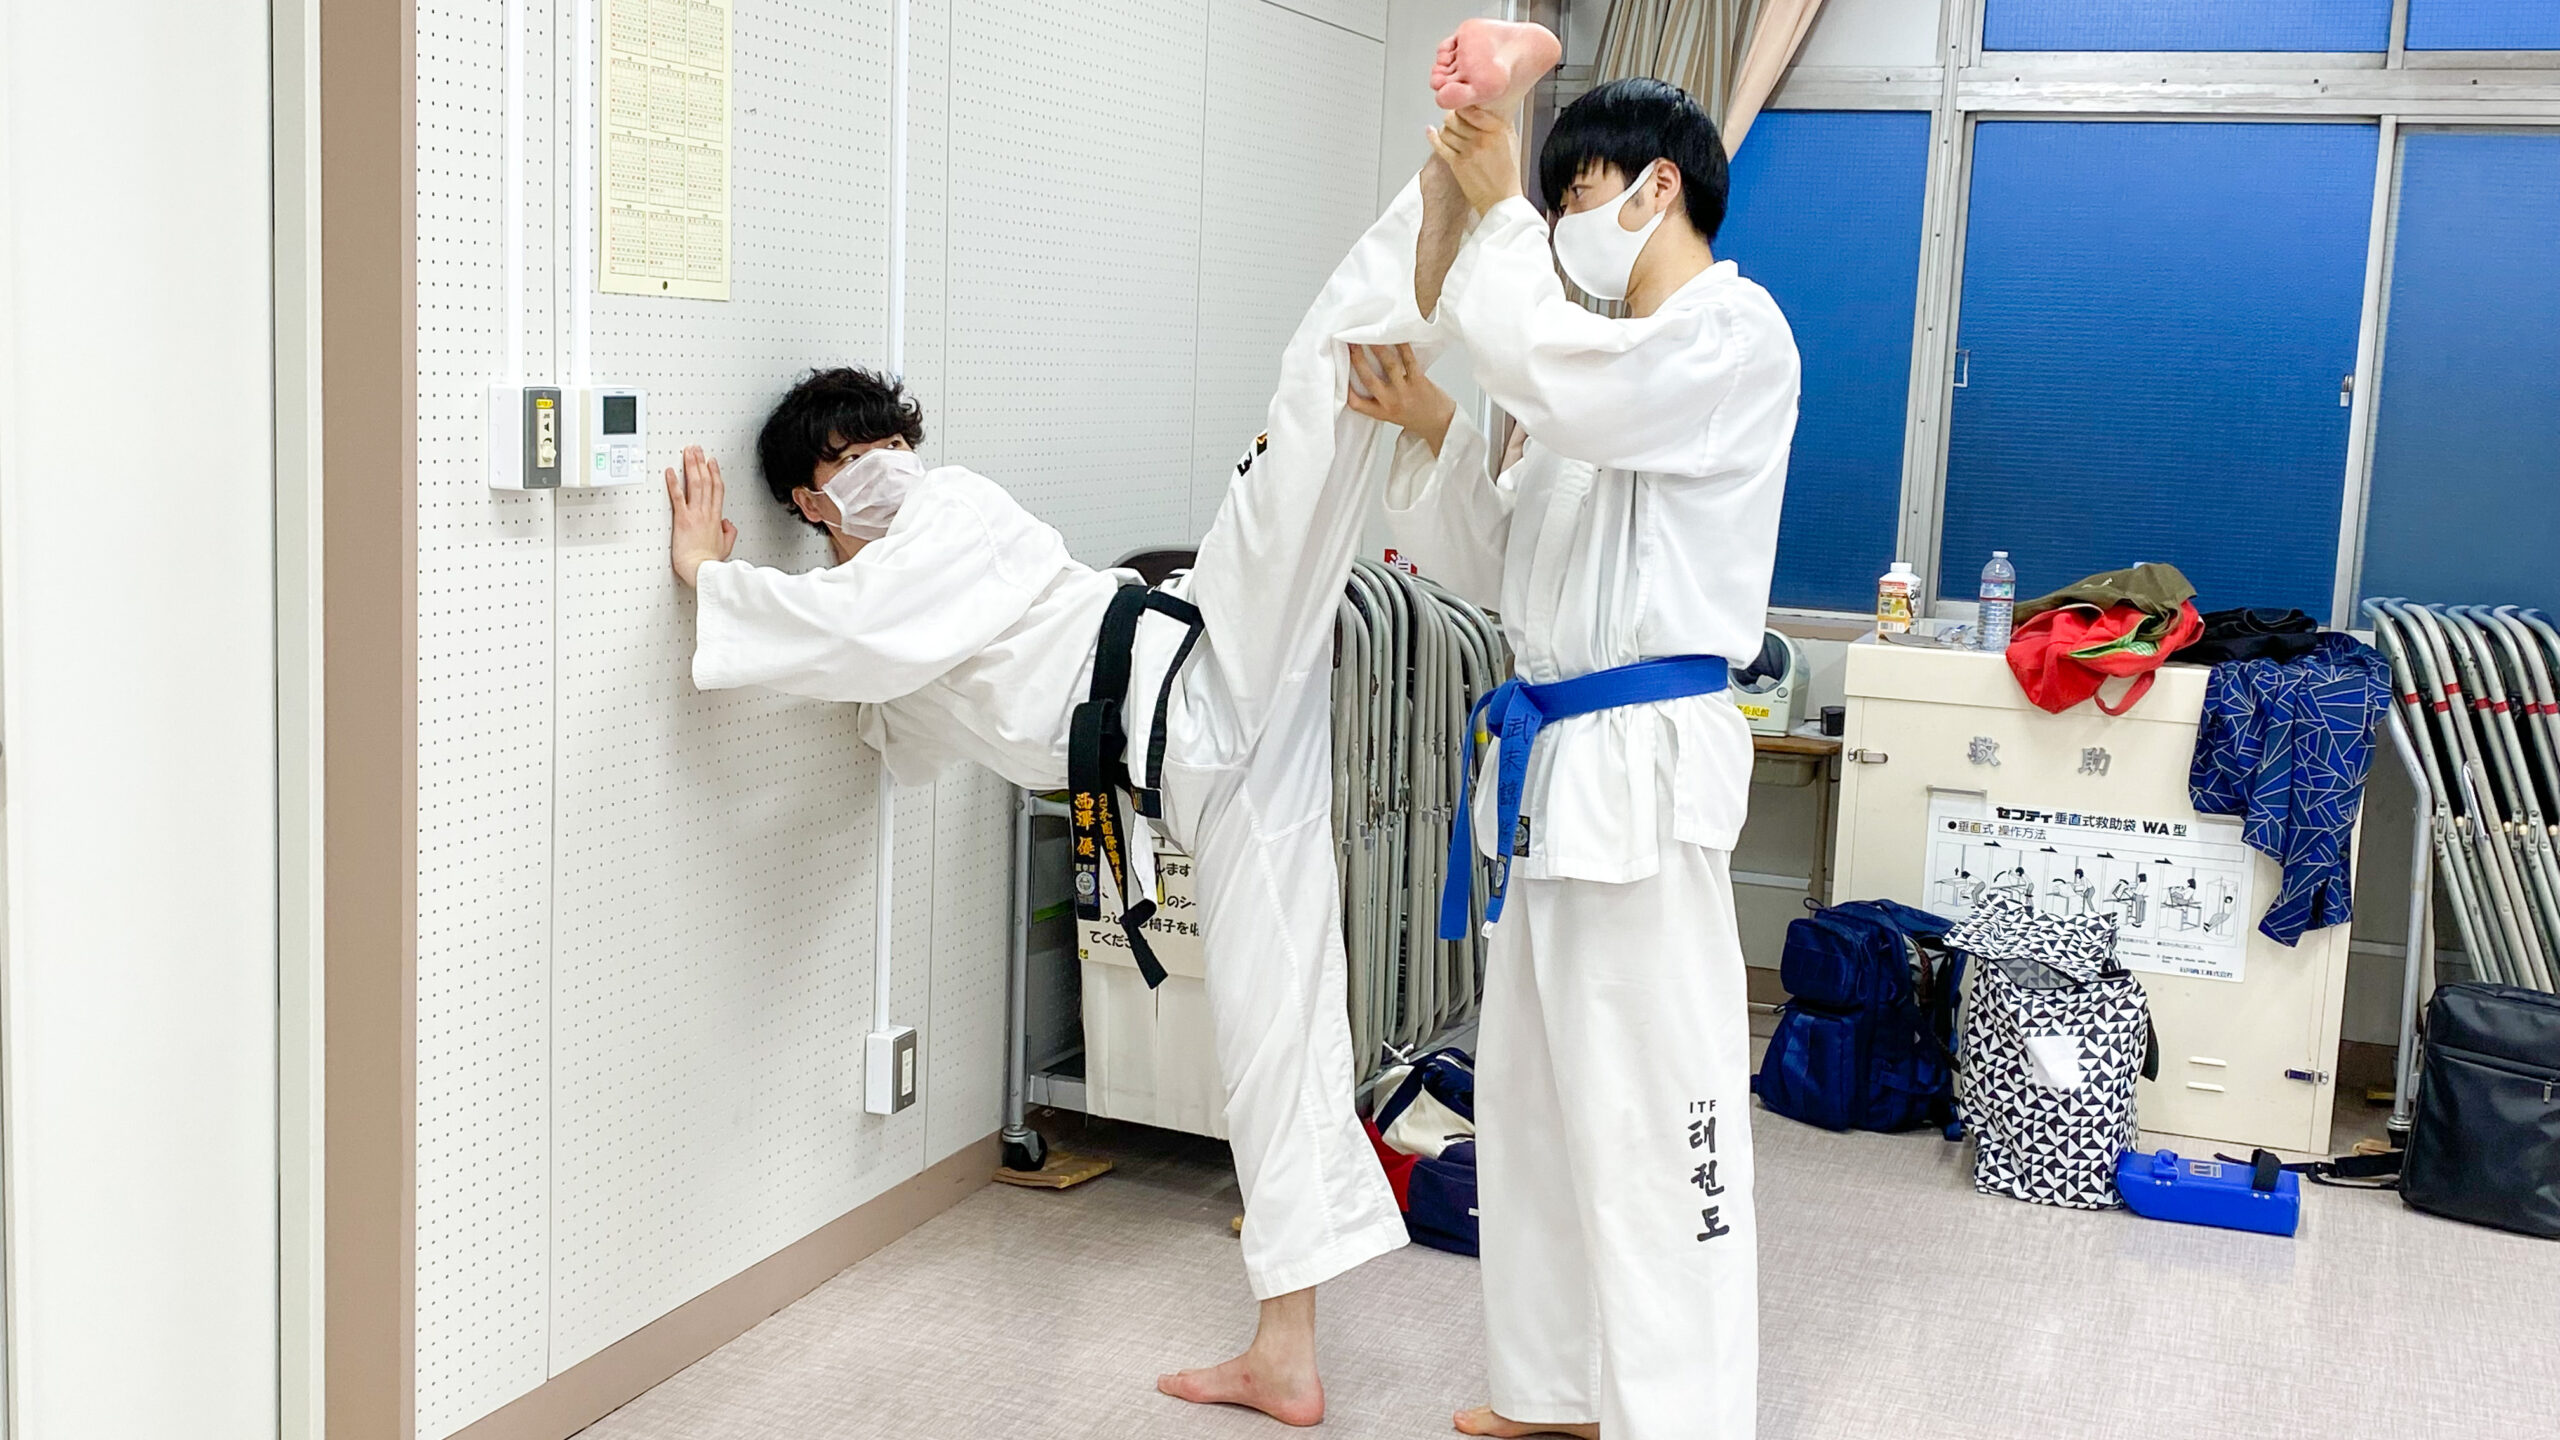 taekwondo-urawa (2)